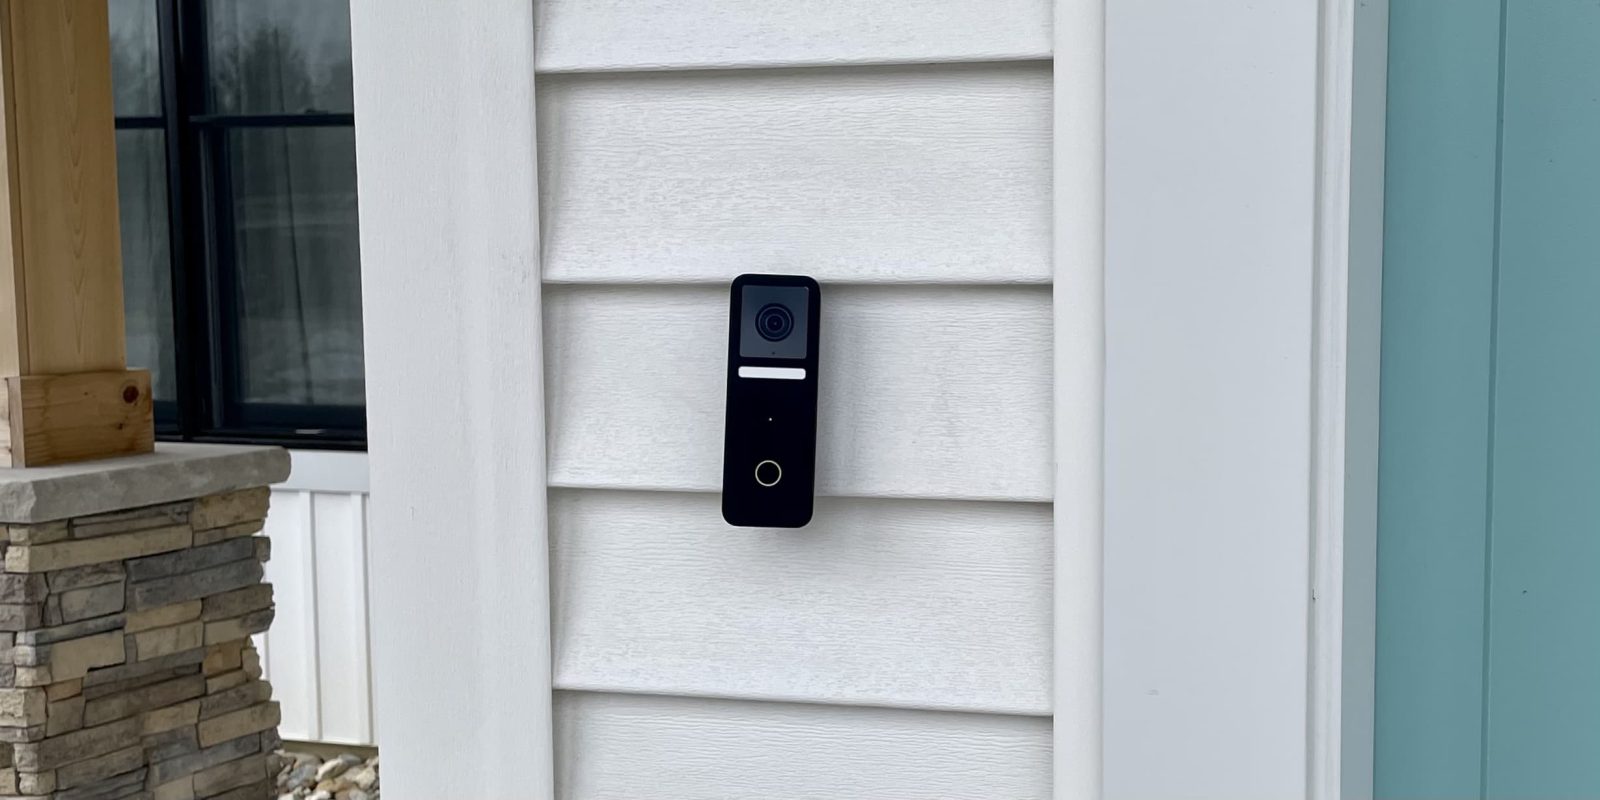 HomeKit doorbells